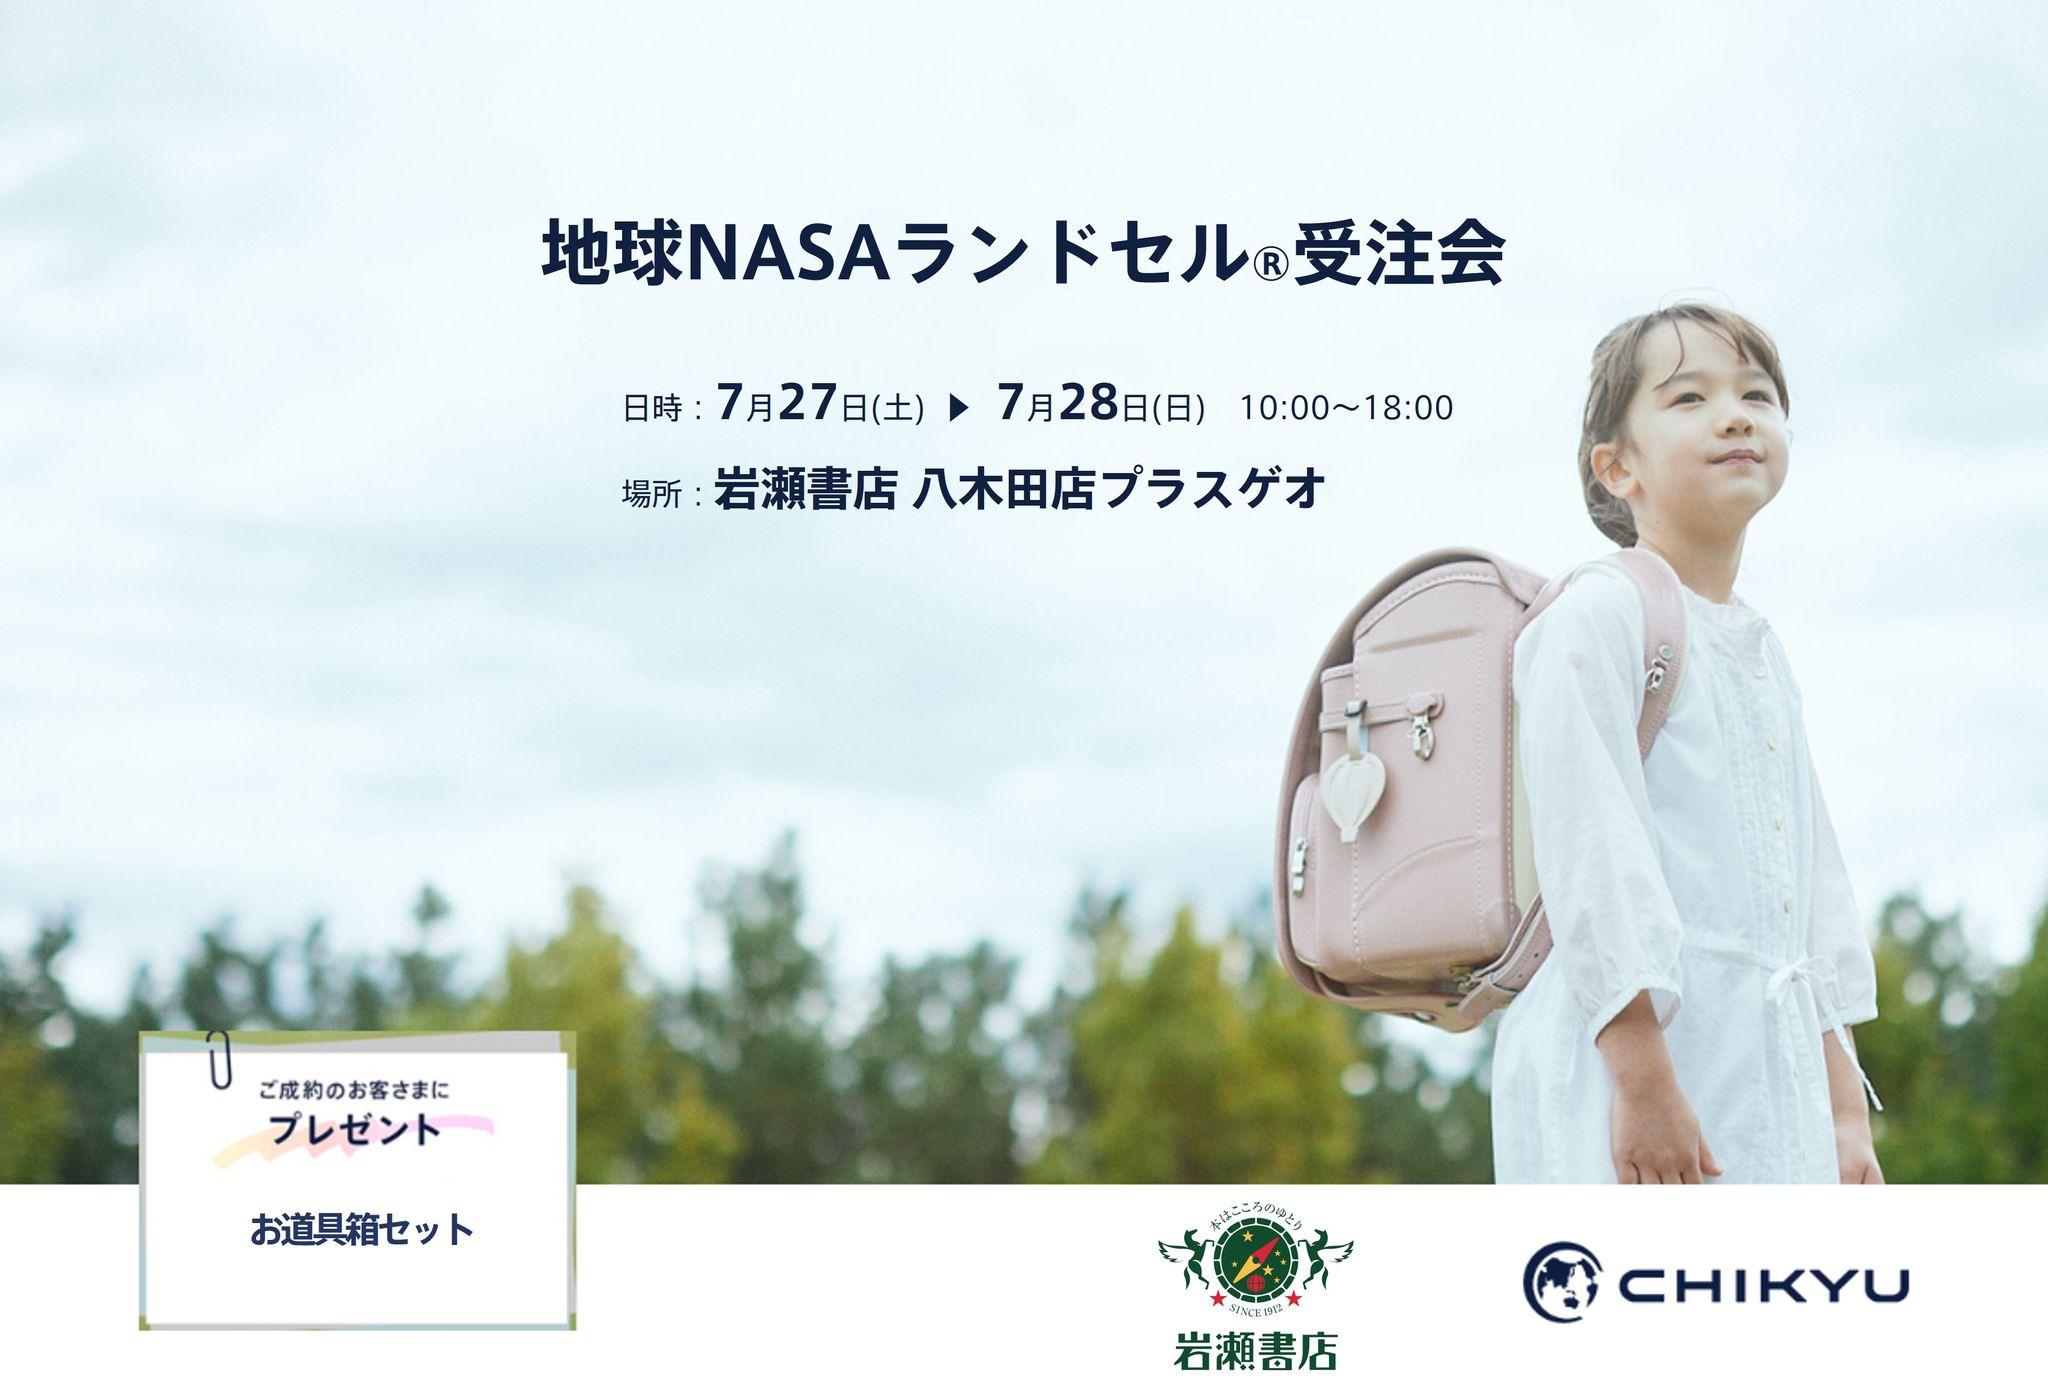 【福島】岩瀬書店八木田店にて「地球NASAランドセル(R) 受注会」を開催いたします。